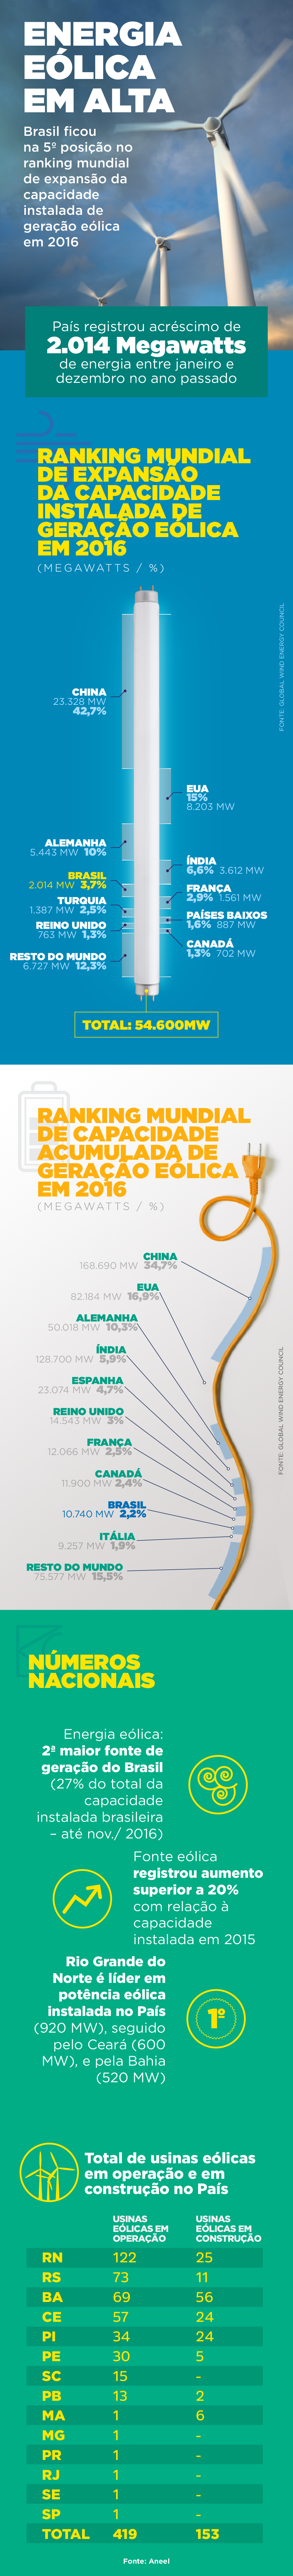 Energia eólica: Brasil sobe no ranking de geradores - Lubes em Foco